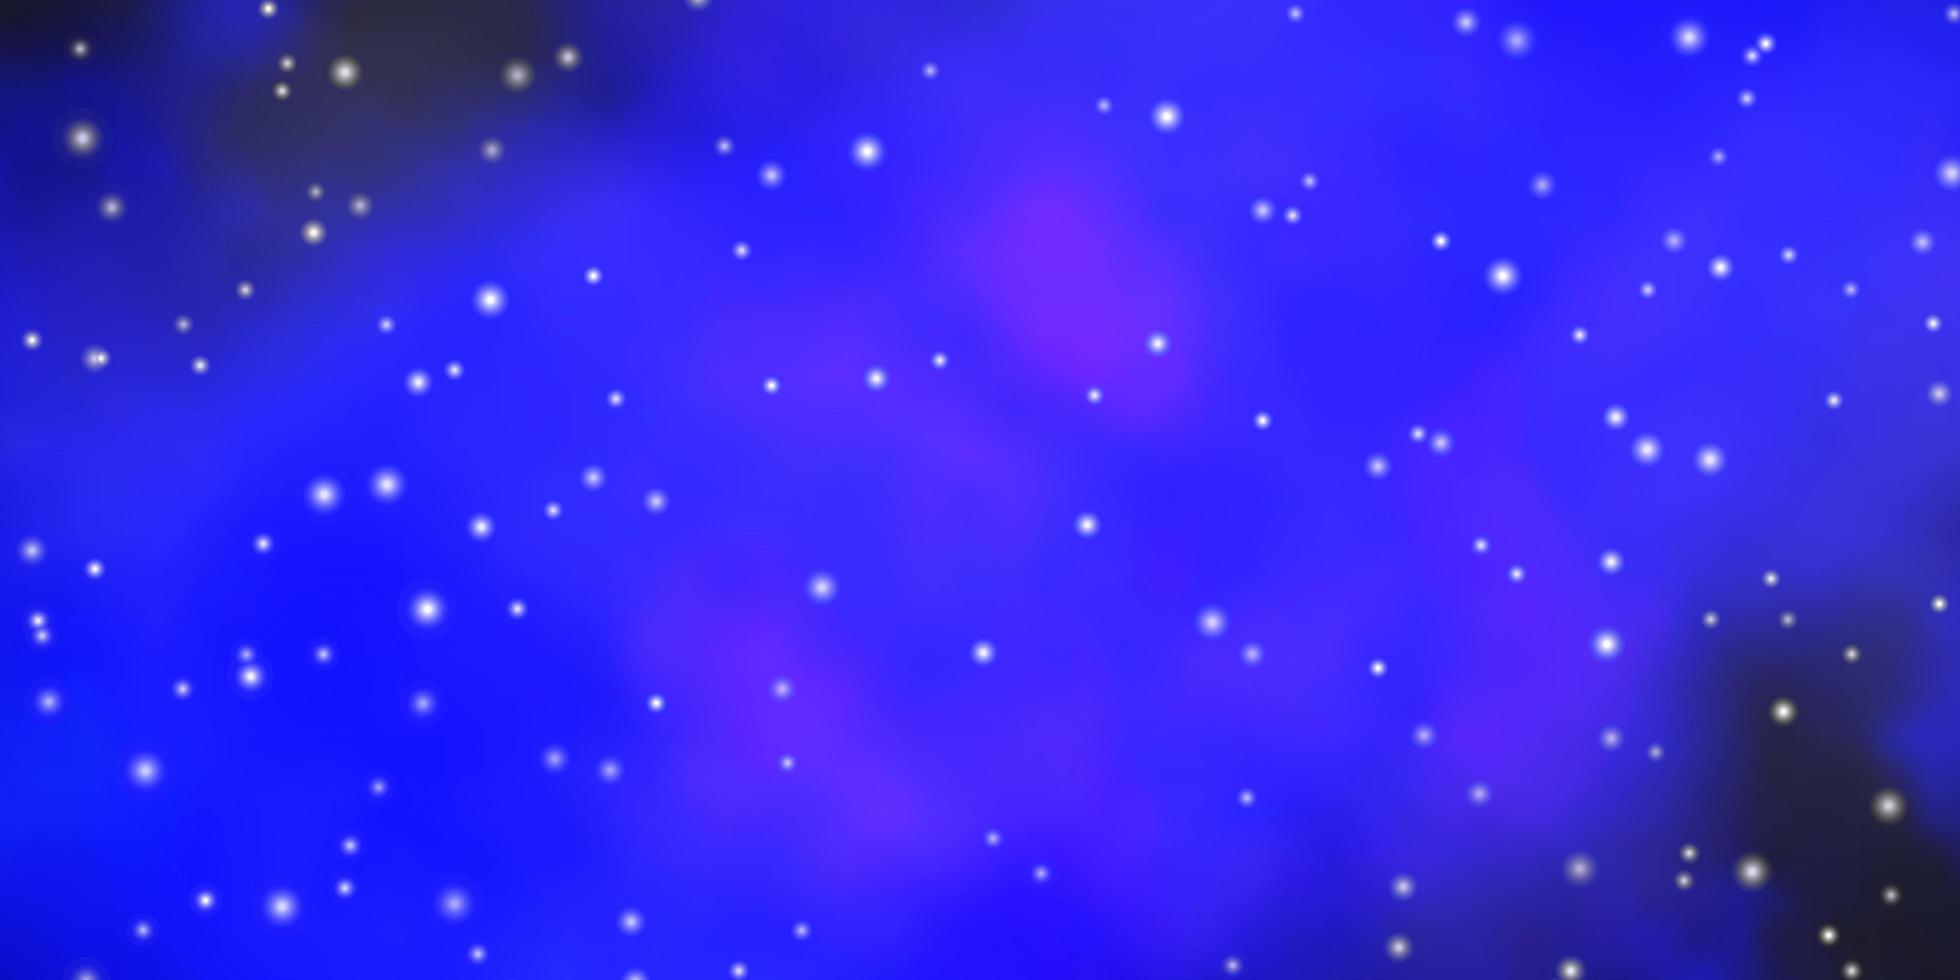 motif vectoriel bleu foncé avec des étoiles abstraites illustration abstraite géométrique moderne avec des étoiles design pour la promotion de votre entreprise